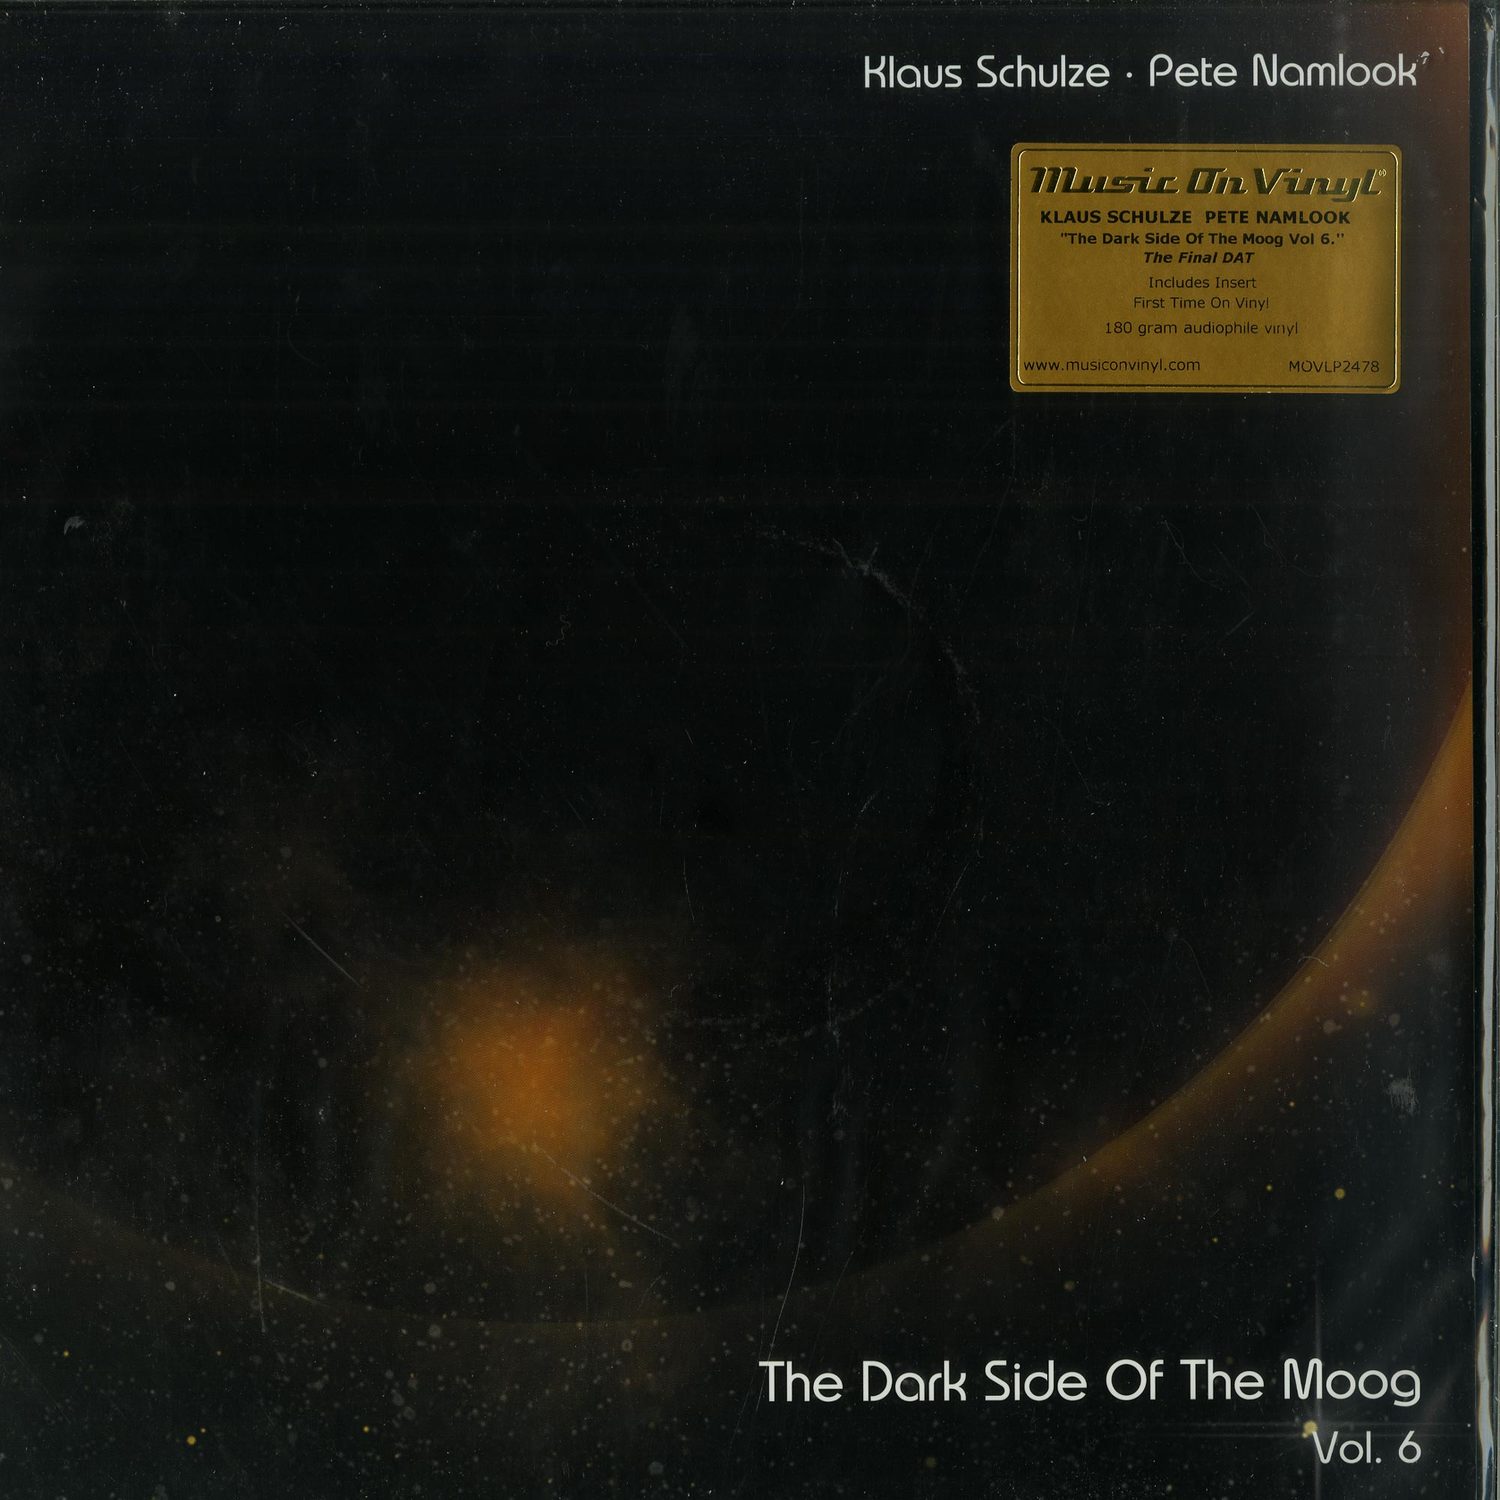 Klaus Schulze & Pete Namlook - DARK SIDE OF THE MOOG VOL. 6 - THE FINAL DAT 